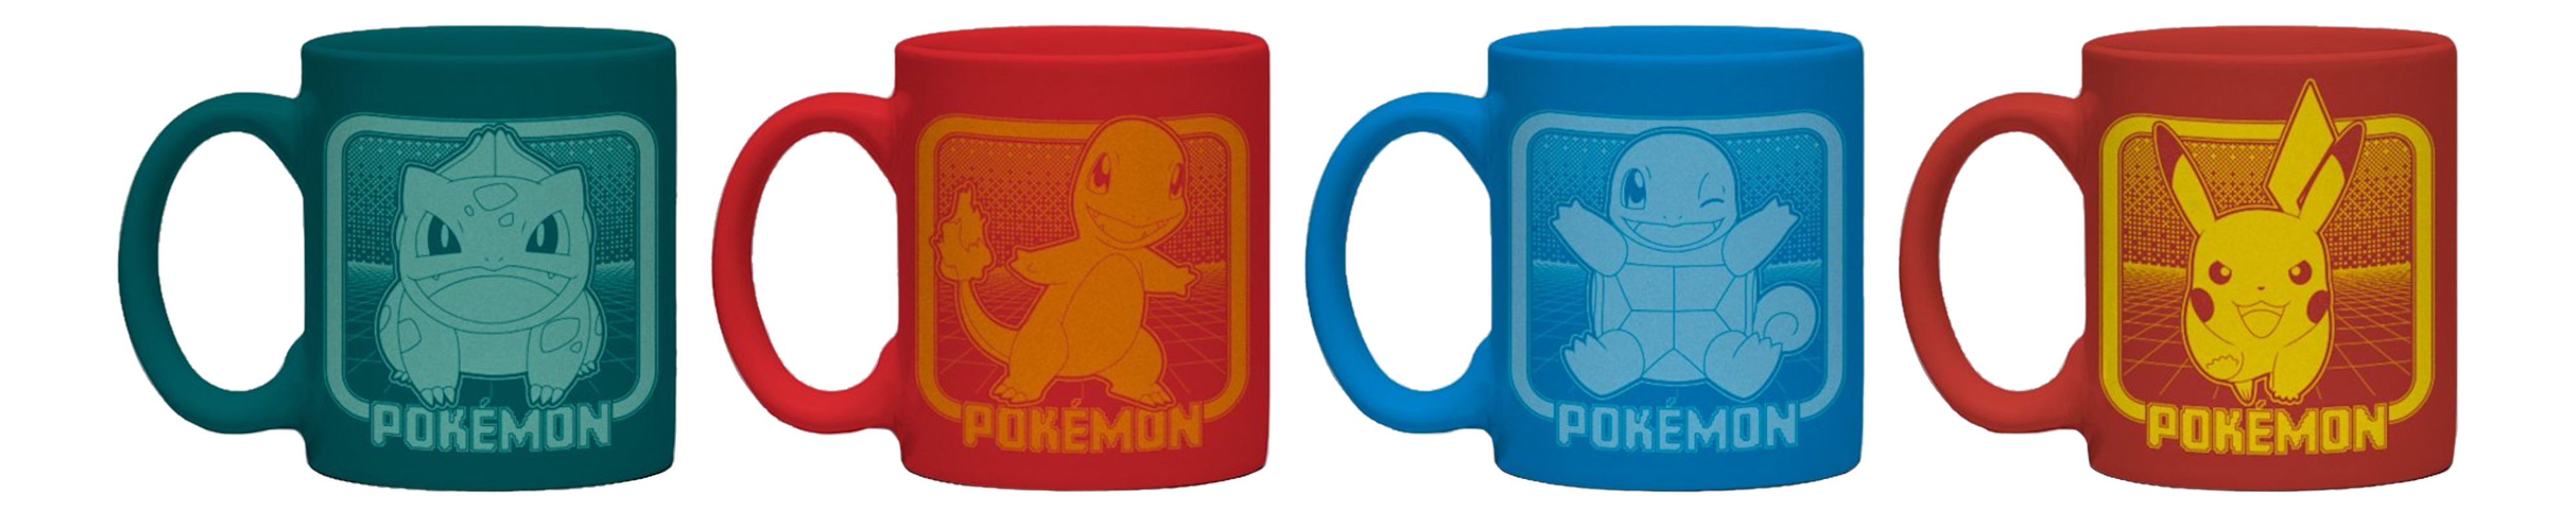 GB EYE LTD Pokémon: Kanto Partners - Mini Mug Set (4x150 ml) - Set di tazze (Multicolore)